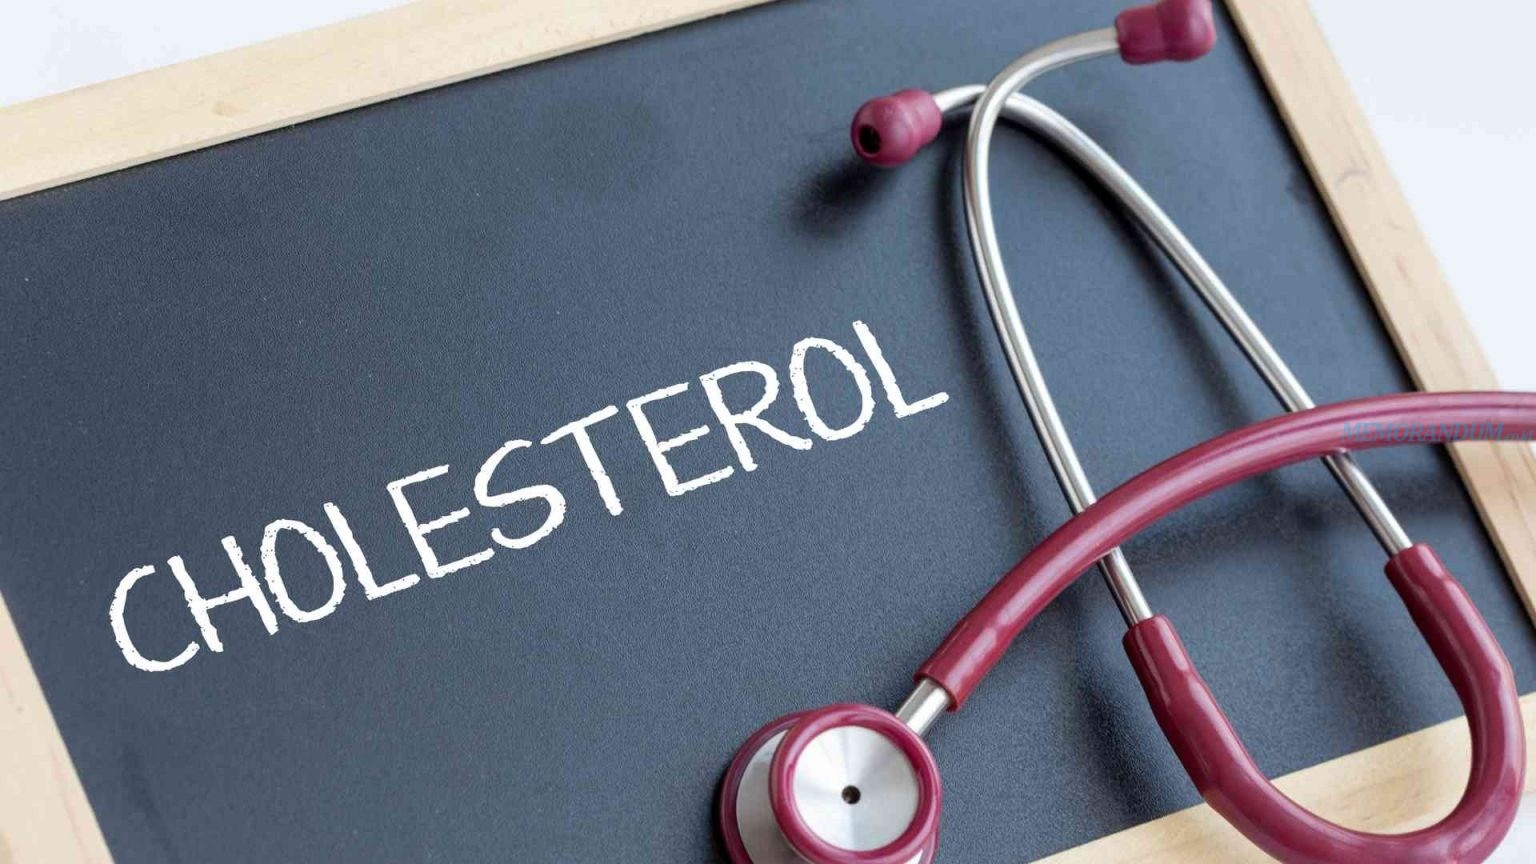 Simak Penyebab Kolesterol yang Sering Disepelekan